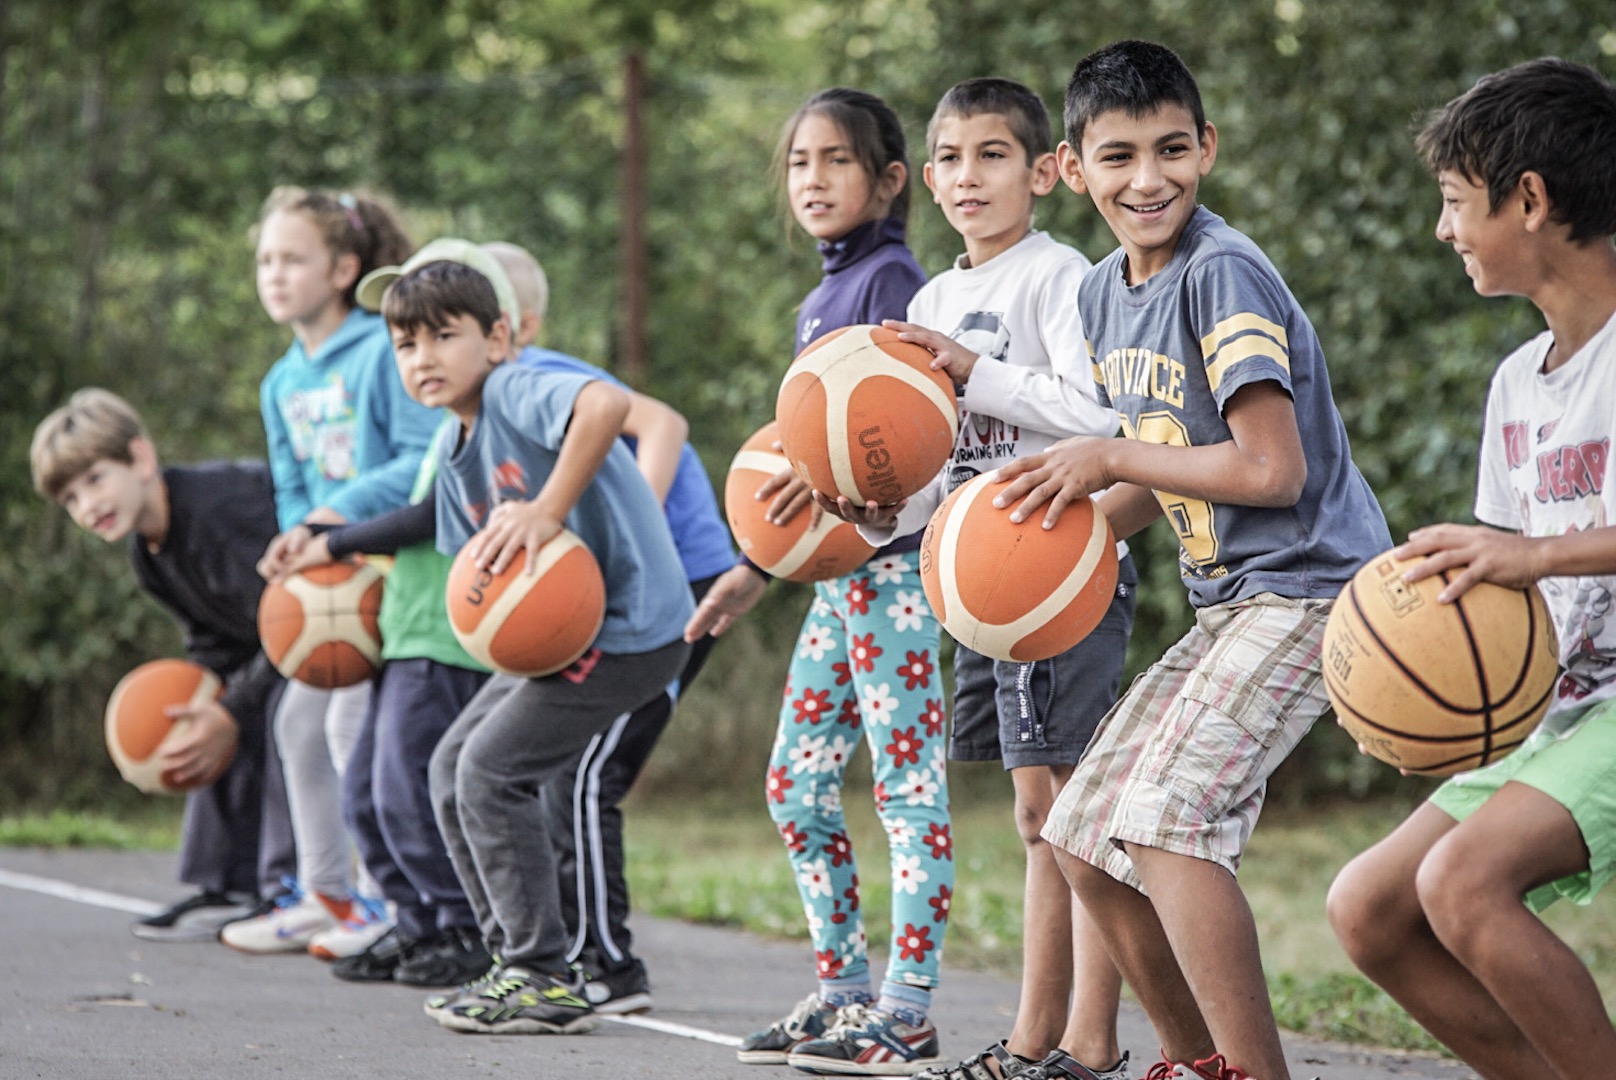 Basketball Leben e.V., Germany | Romania